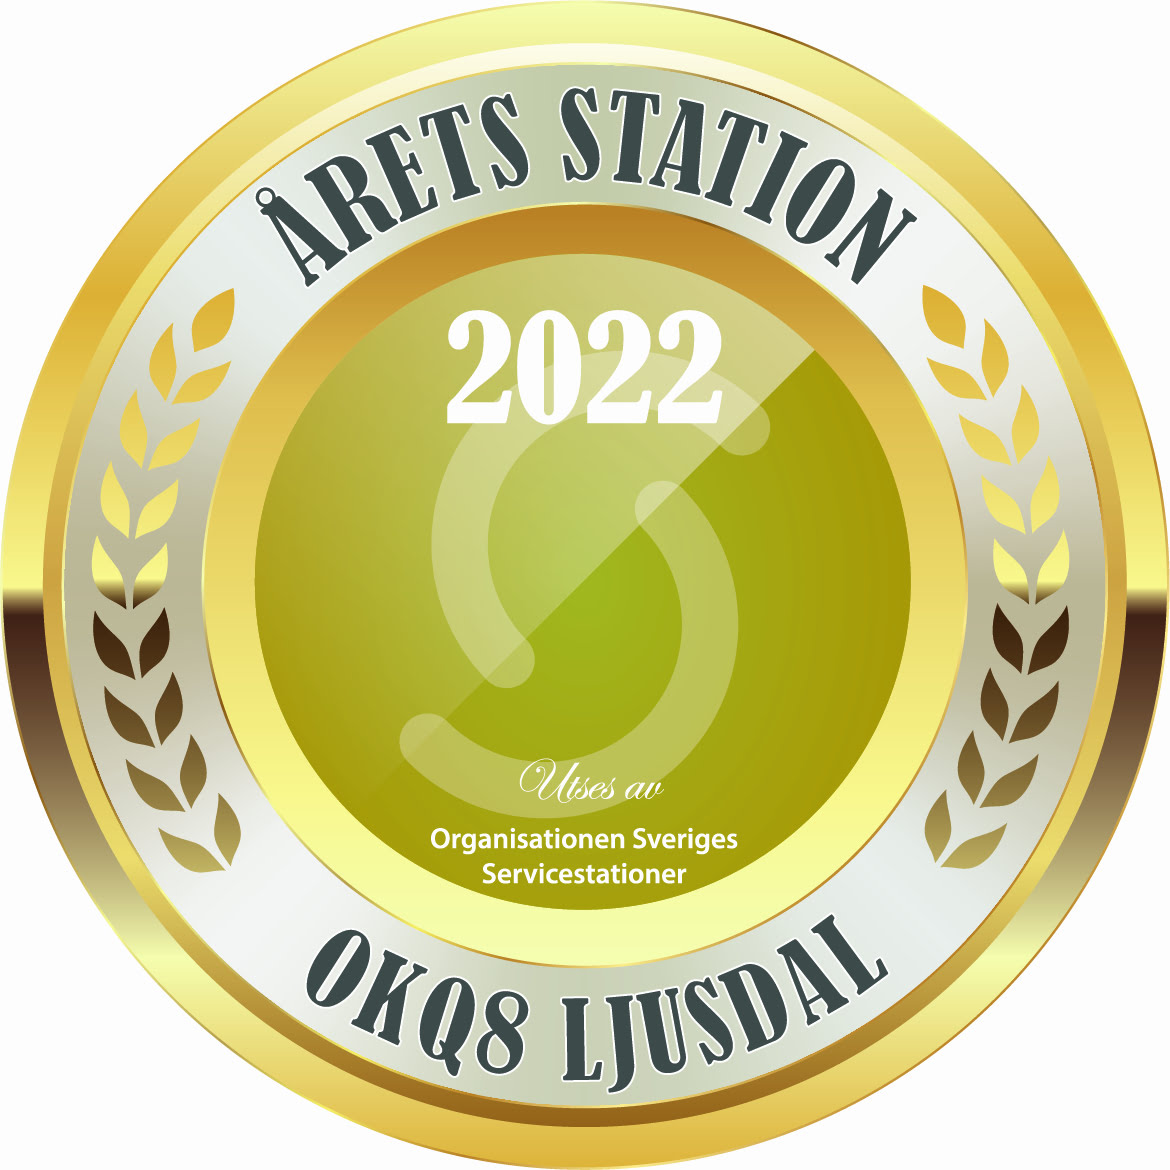 AretsStation22-OKQ8 Ljusdal